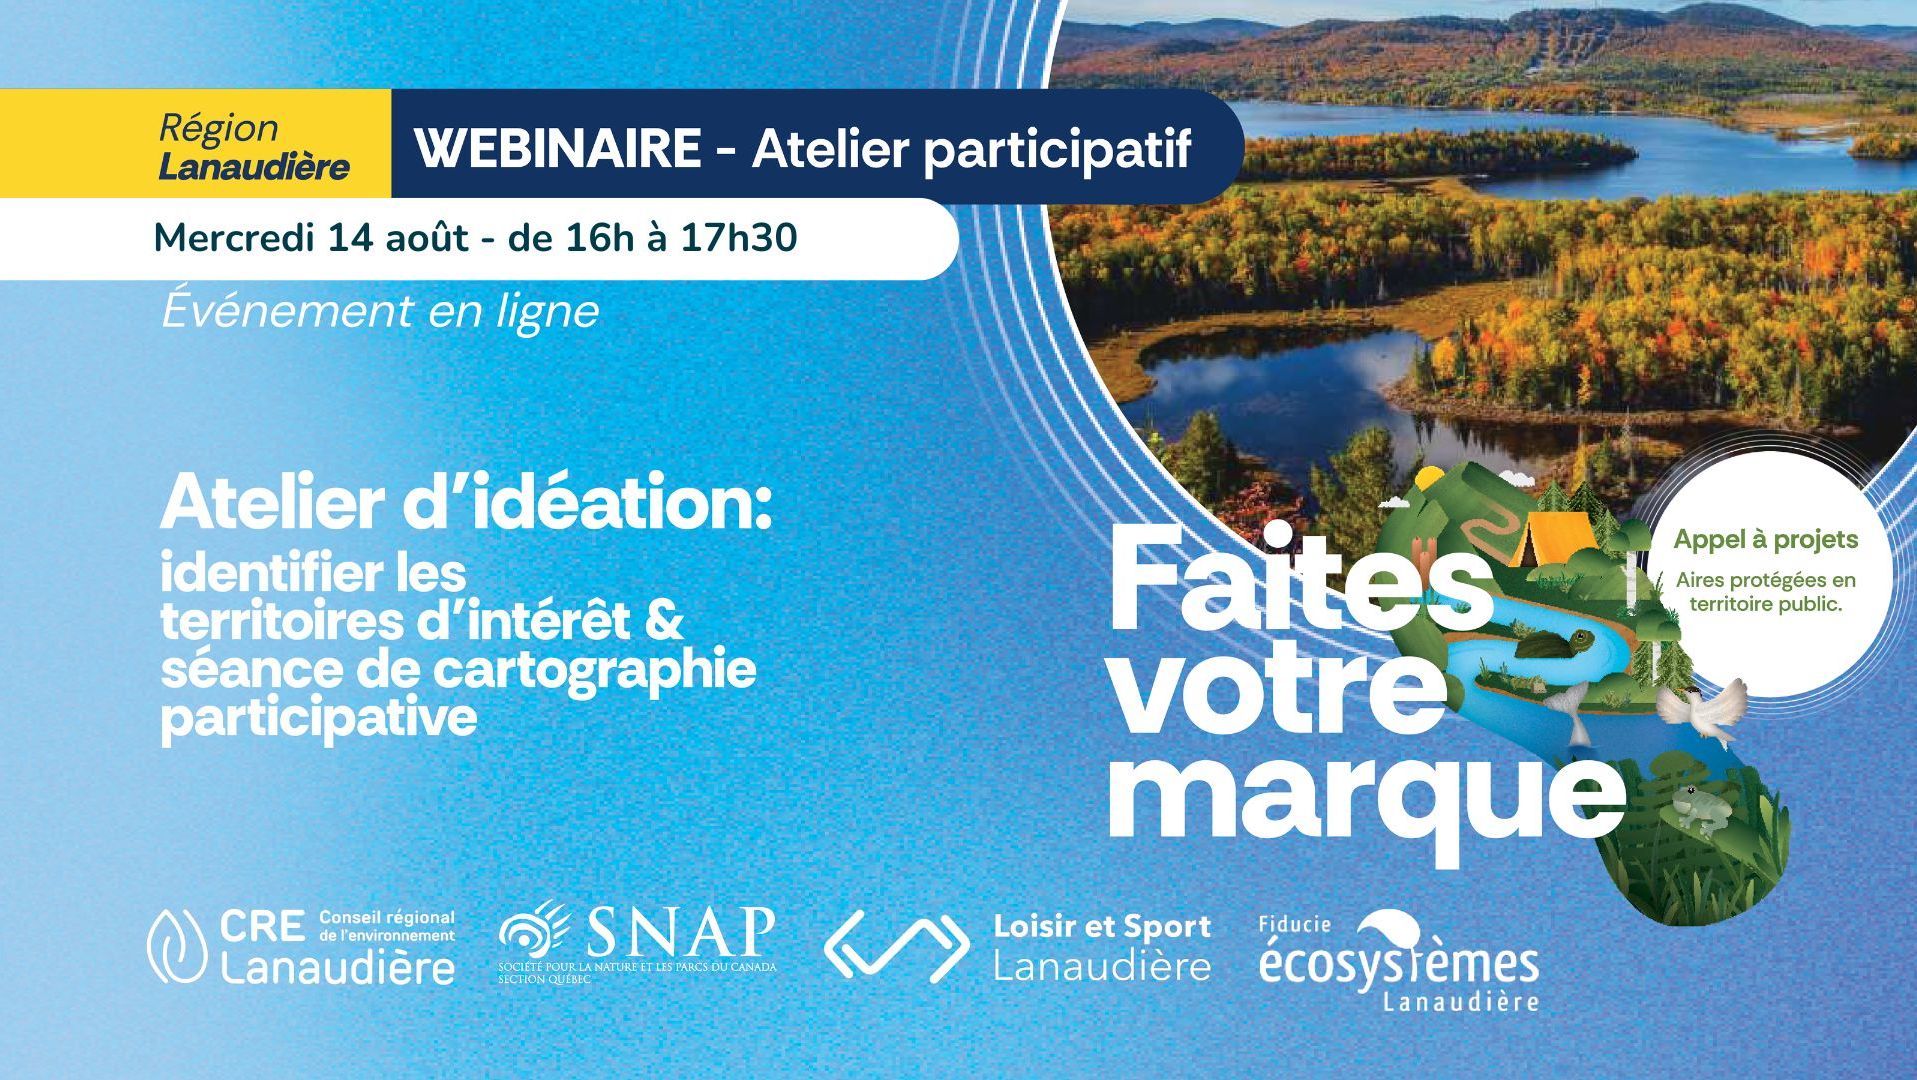 Featured image for “Lanaudière – 14 août : 2ème atelier d’idéation pour l’appel à projets !”